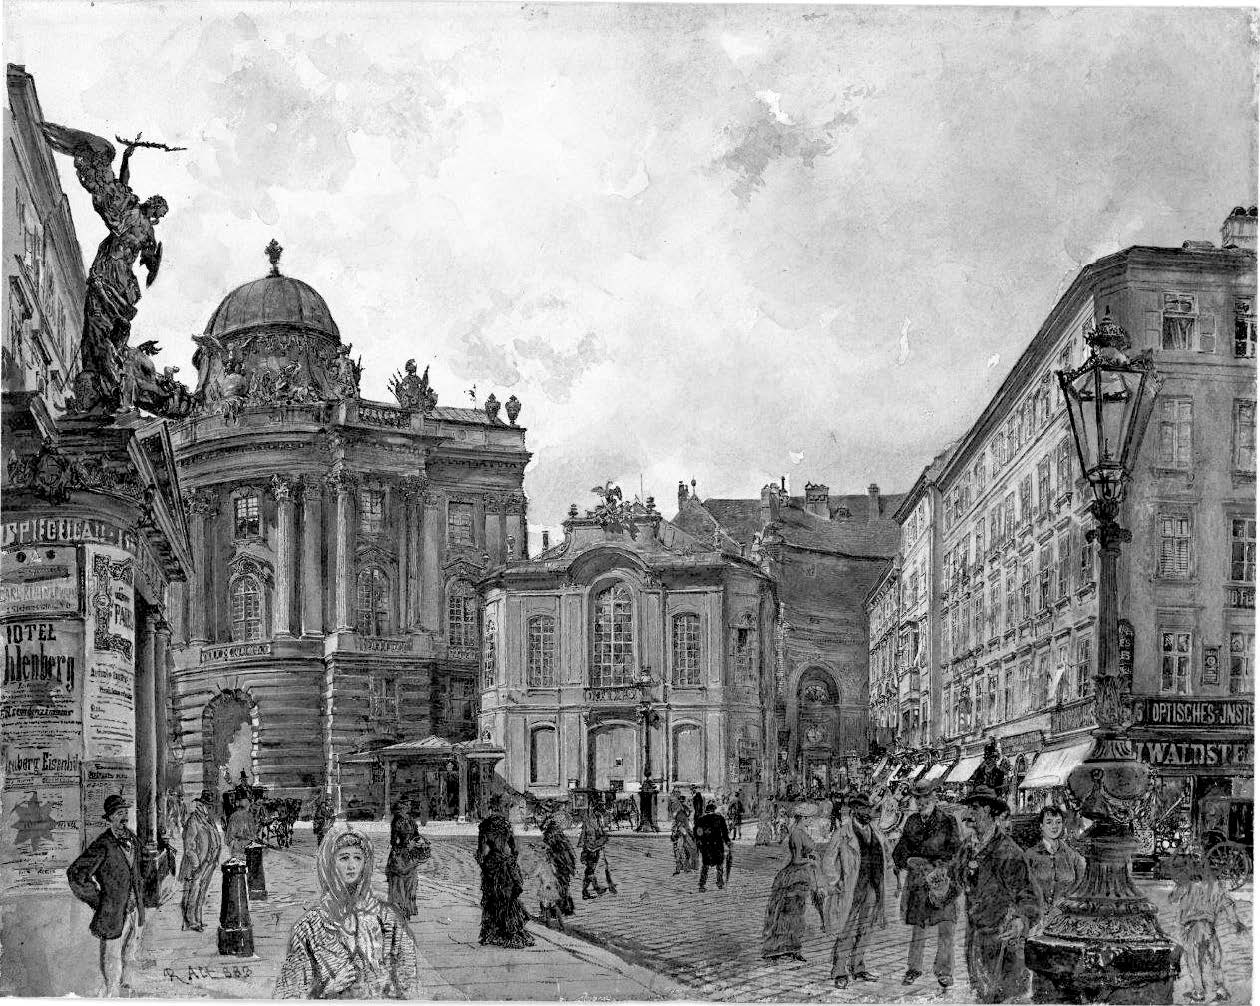 Vienna in the early nineteenth century. Wien, Michaelertor der Hofburg und altes Burgtheater, Aquarell (1888), by Rudolf von Alt.